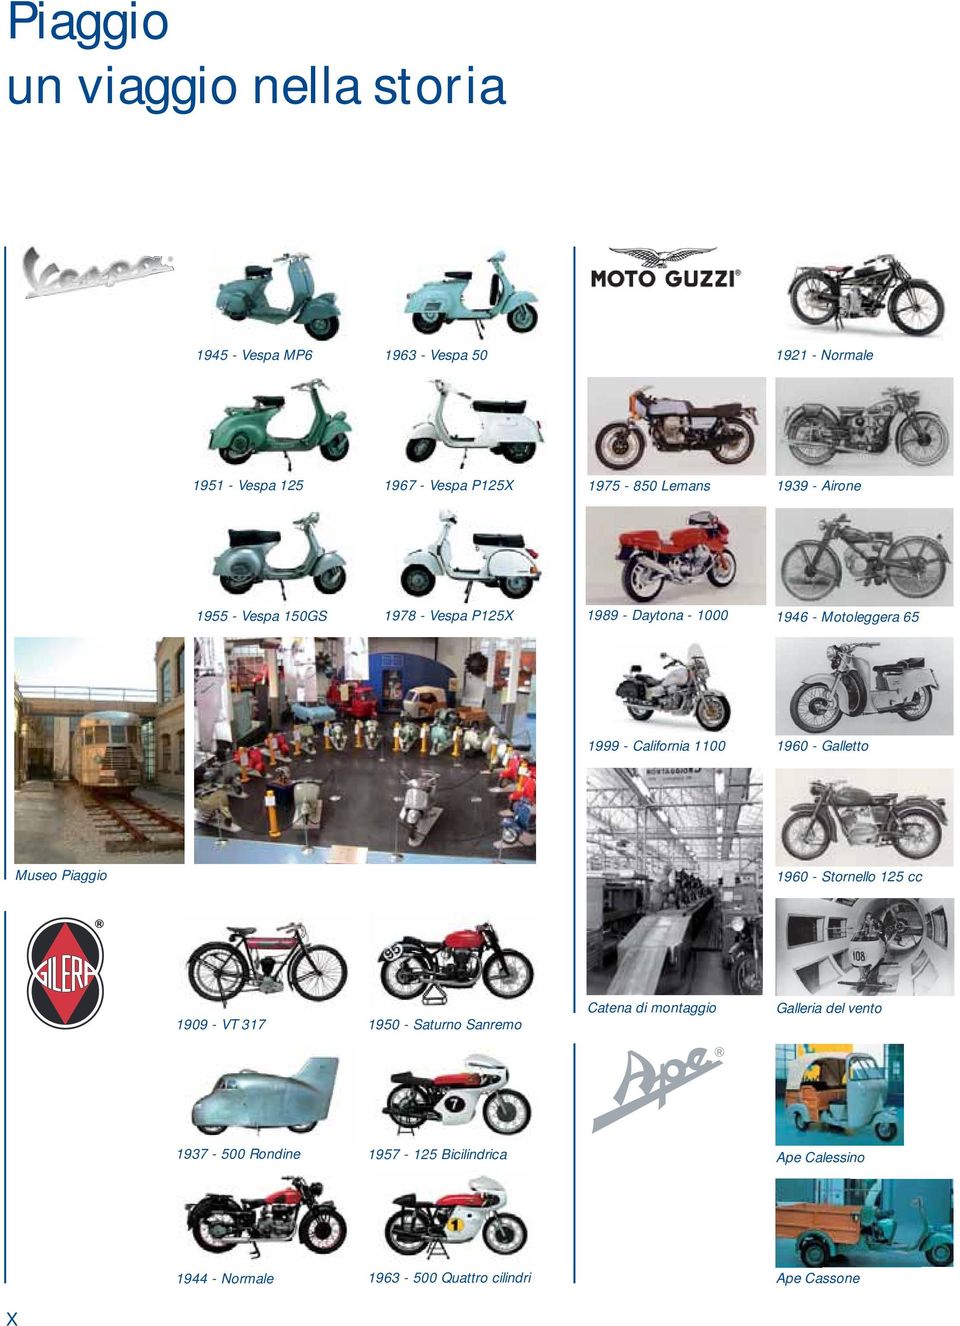 California 1100 1960 - Galletto Museo Piaggio 1960 - Stornello 125 cc 1909 - VT 317 1950 - Saturno Sanremo Catena di